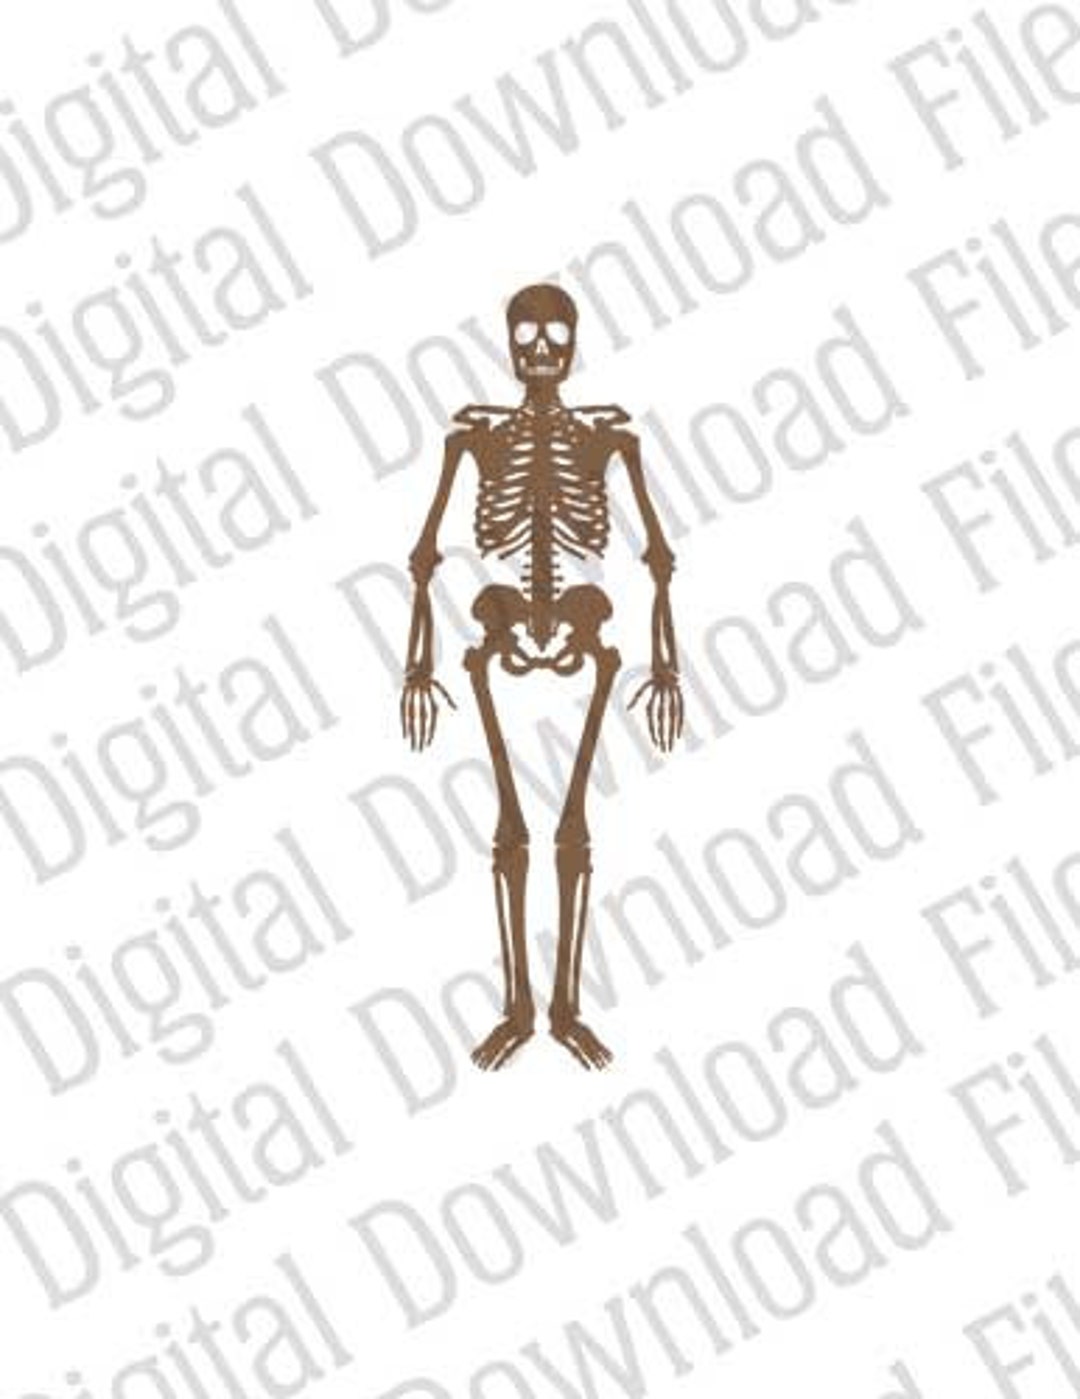 Anatomical LEGO Man Skeleton PNG Images & PSDs for Download